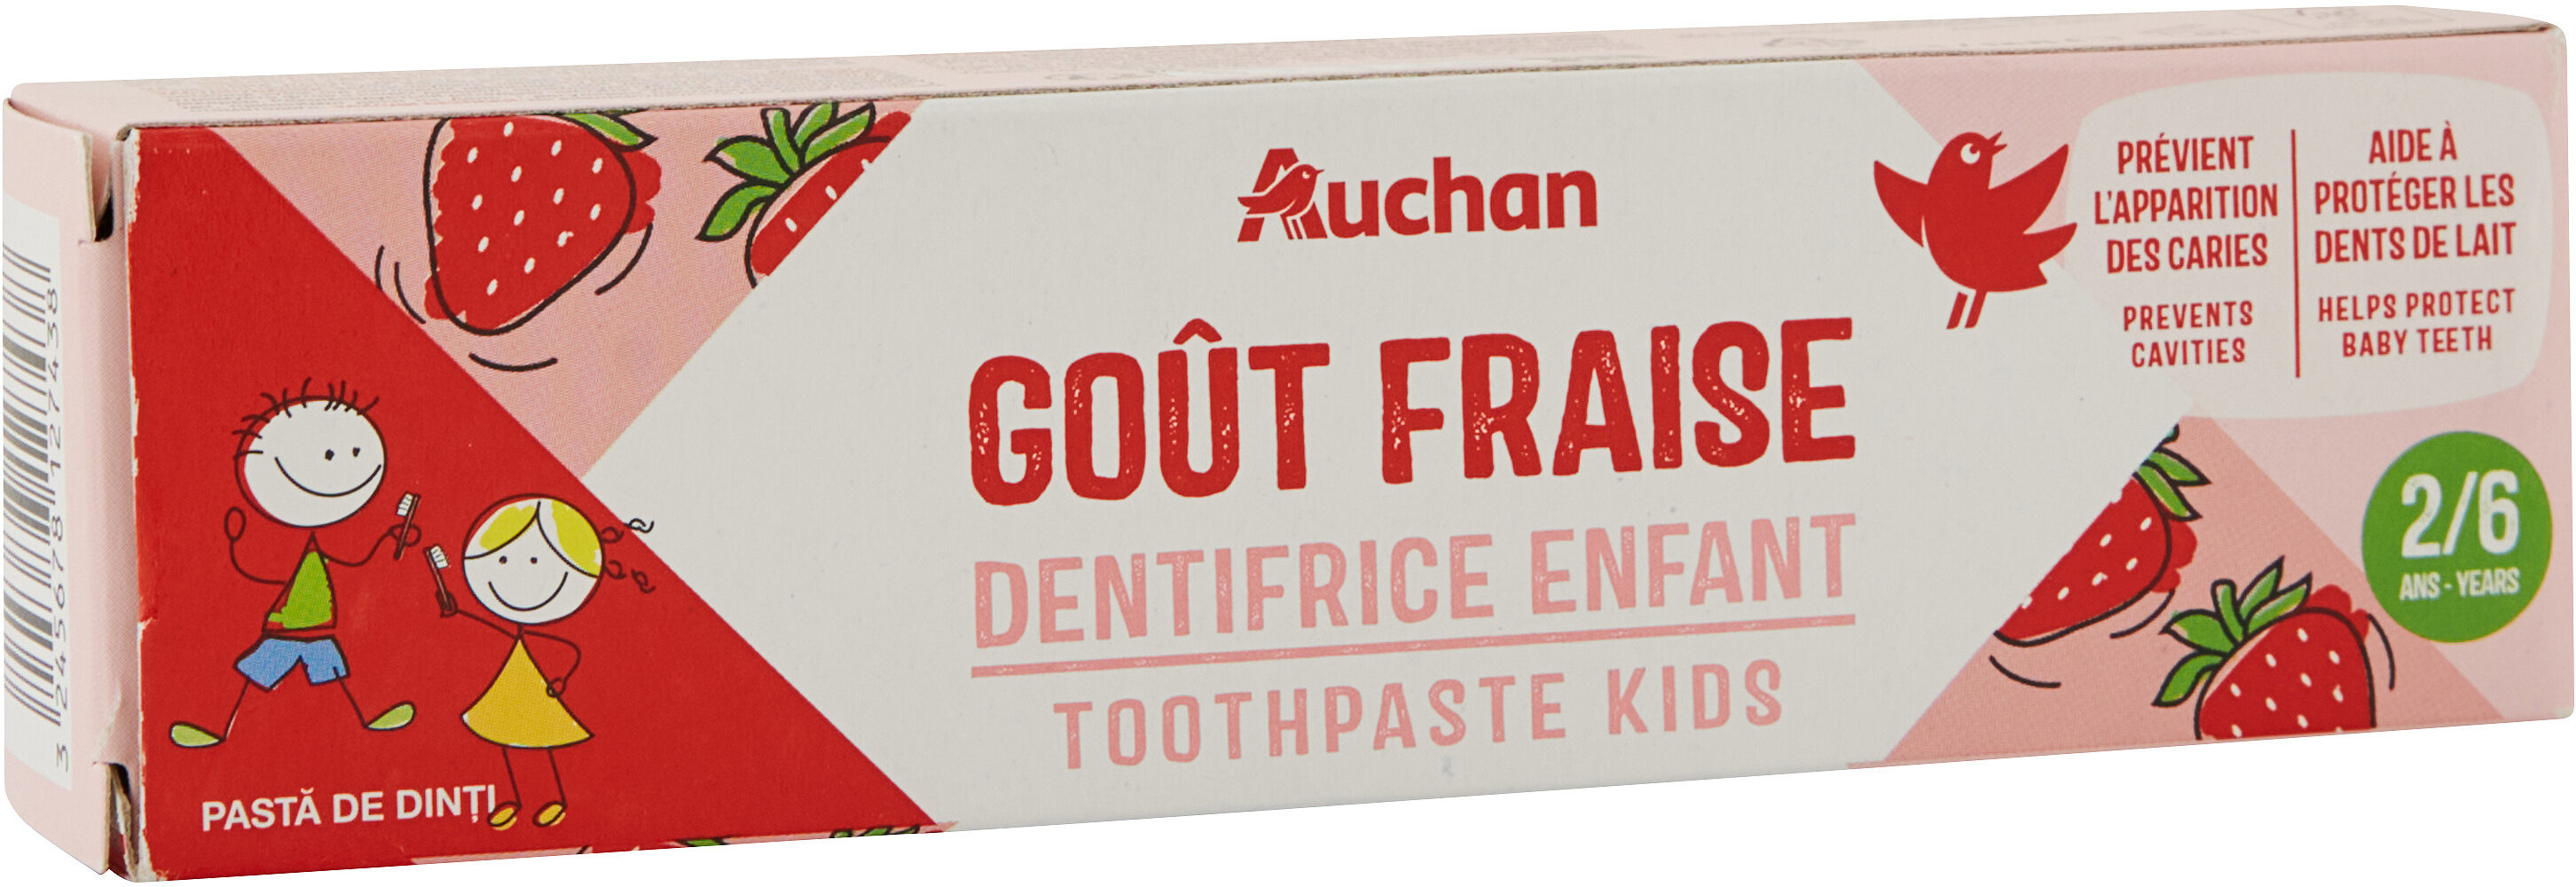 Auchan kids dentifrice fraise tube 2 + - 50ml - 製品 - fr